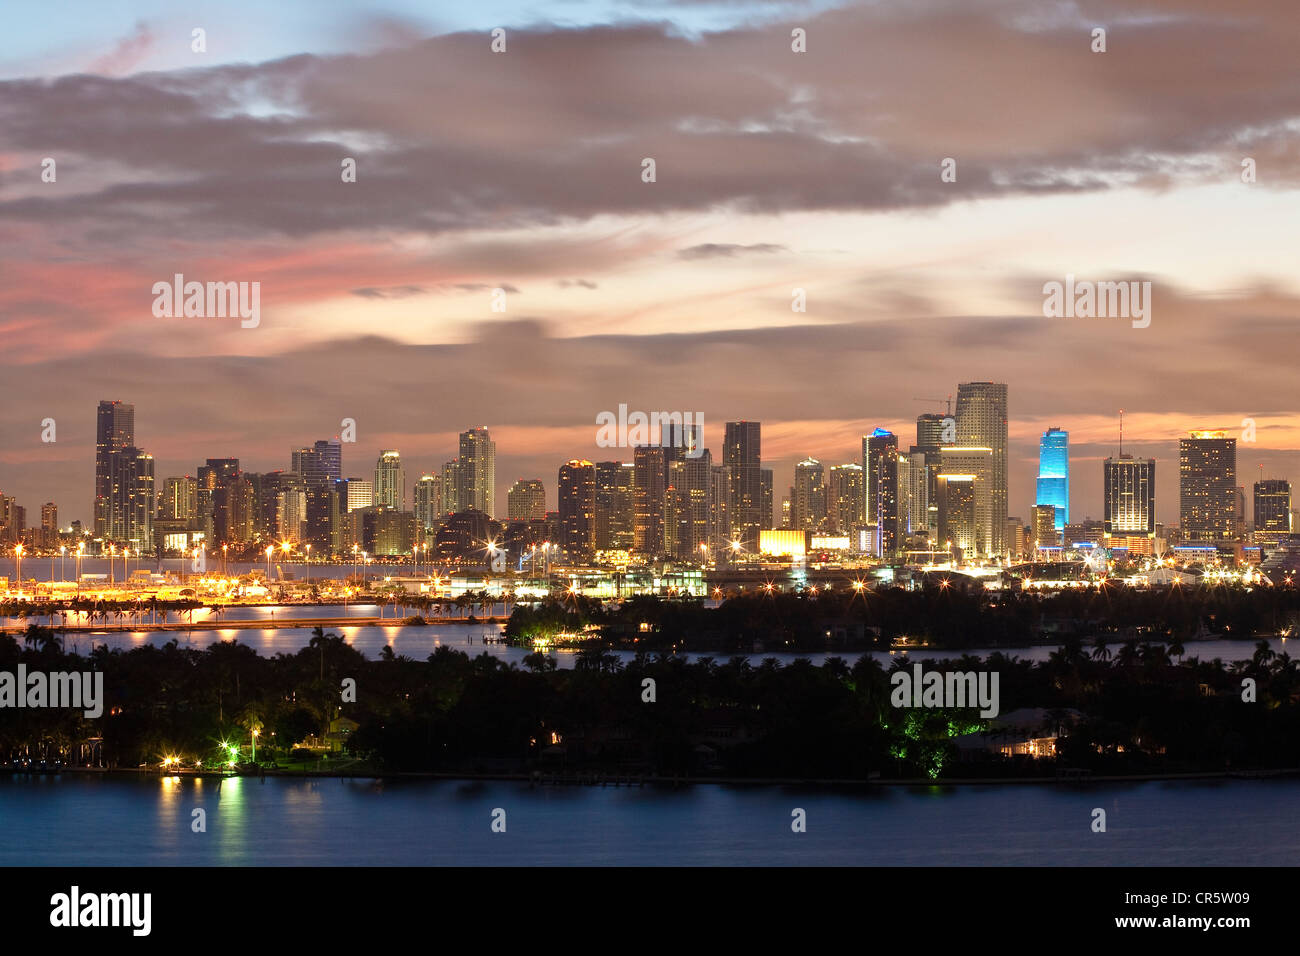 États-unis, Floride, Miami, vue de South Beach sur la baie de Biscayne et le centre-ville de Miami Banque D'Images